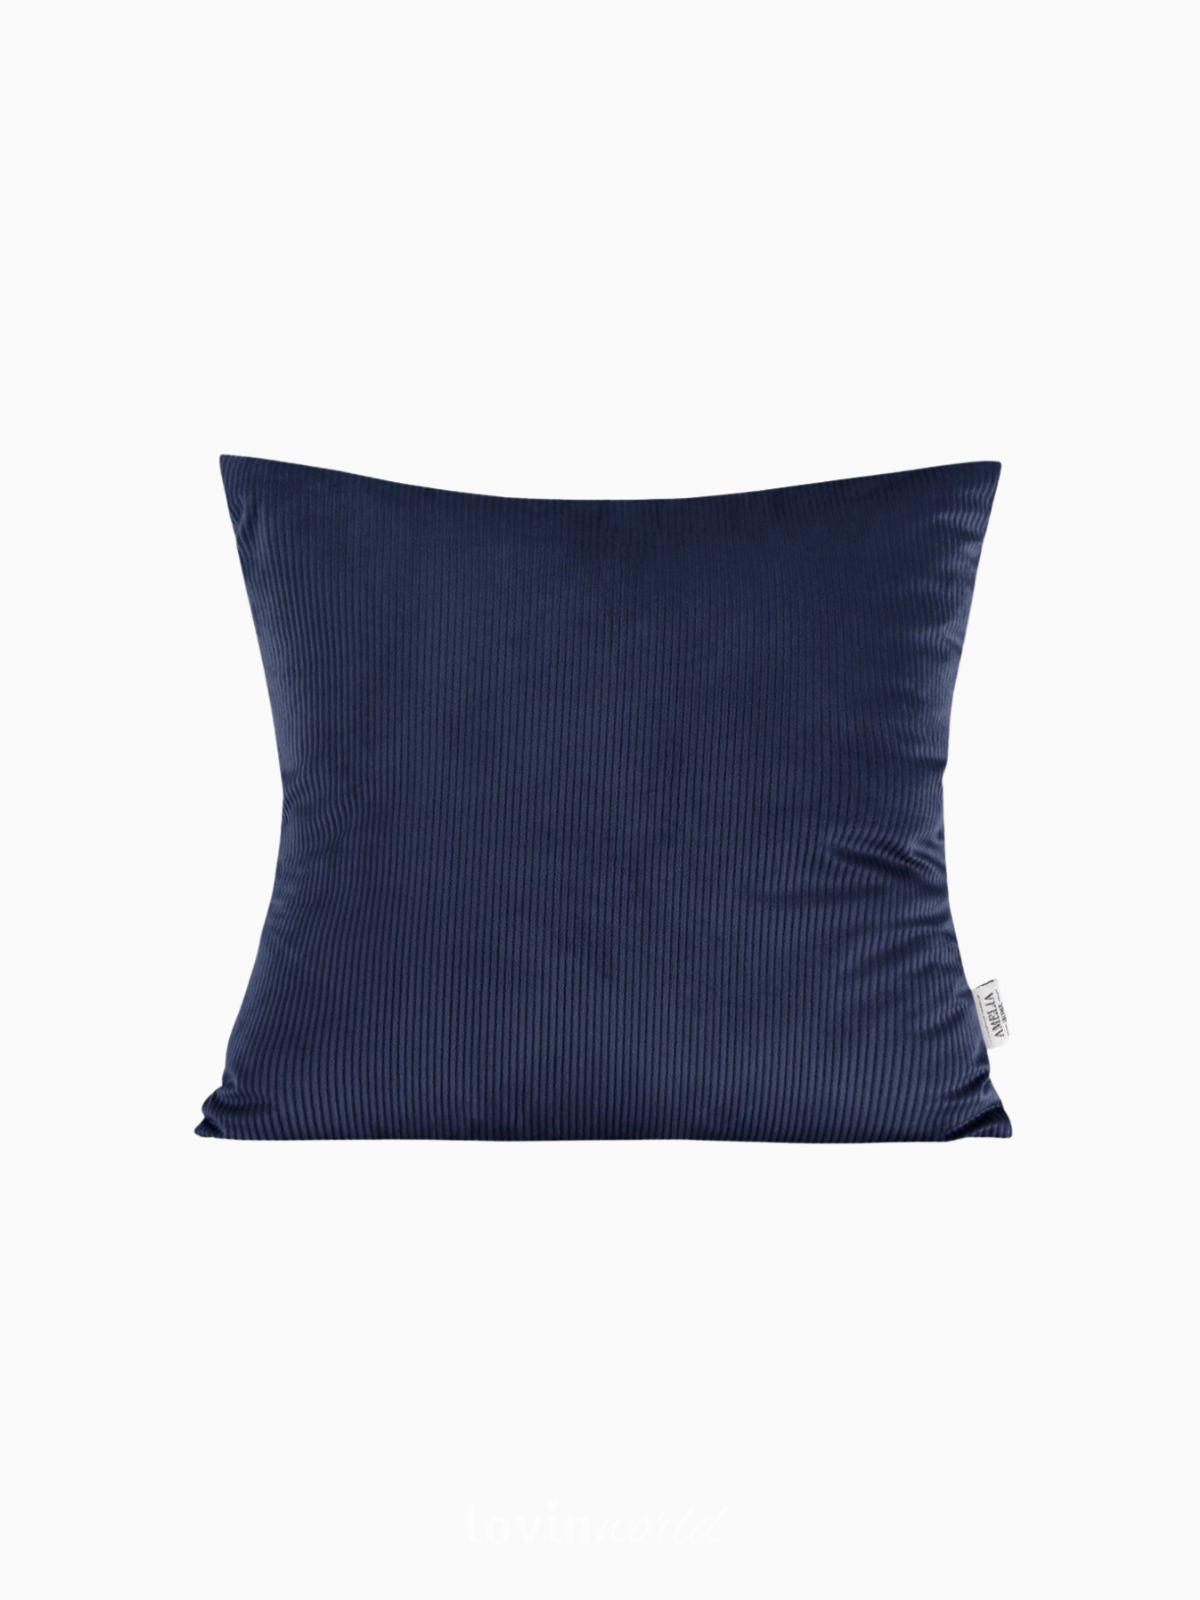 Cuscino decorativo in velluto Duffy, colore blu 45x45 cm.-1